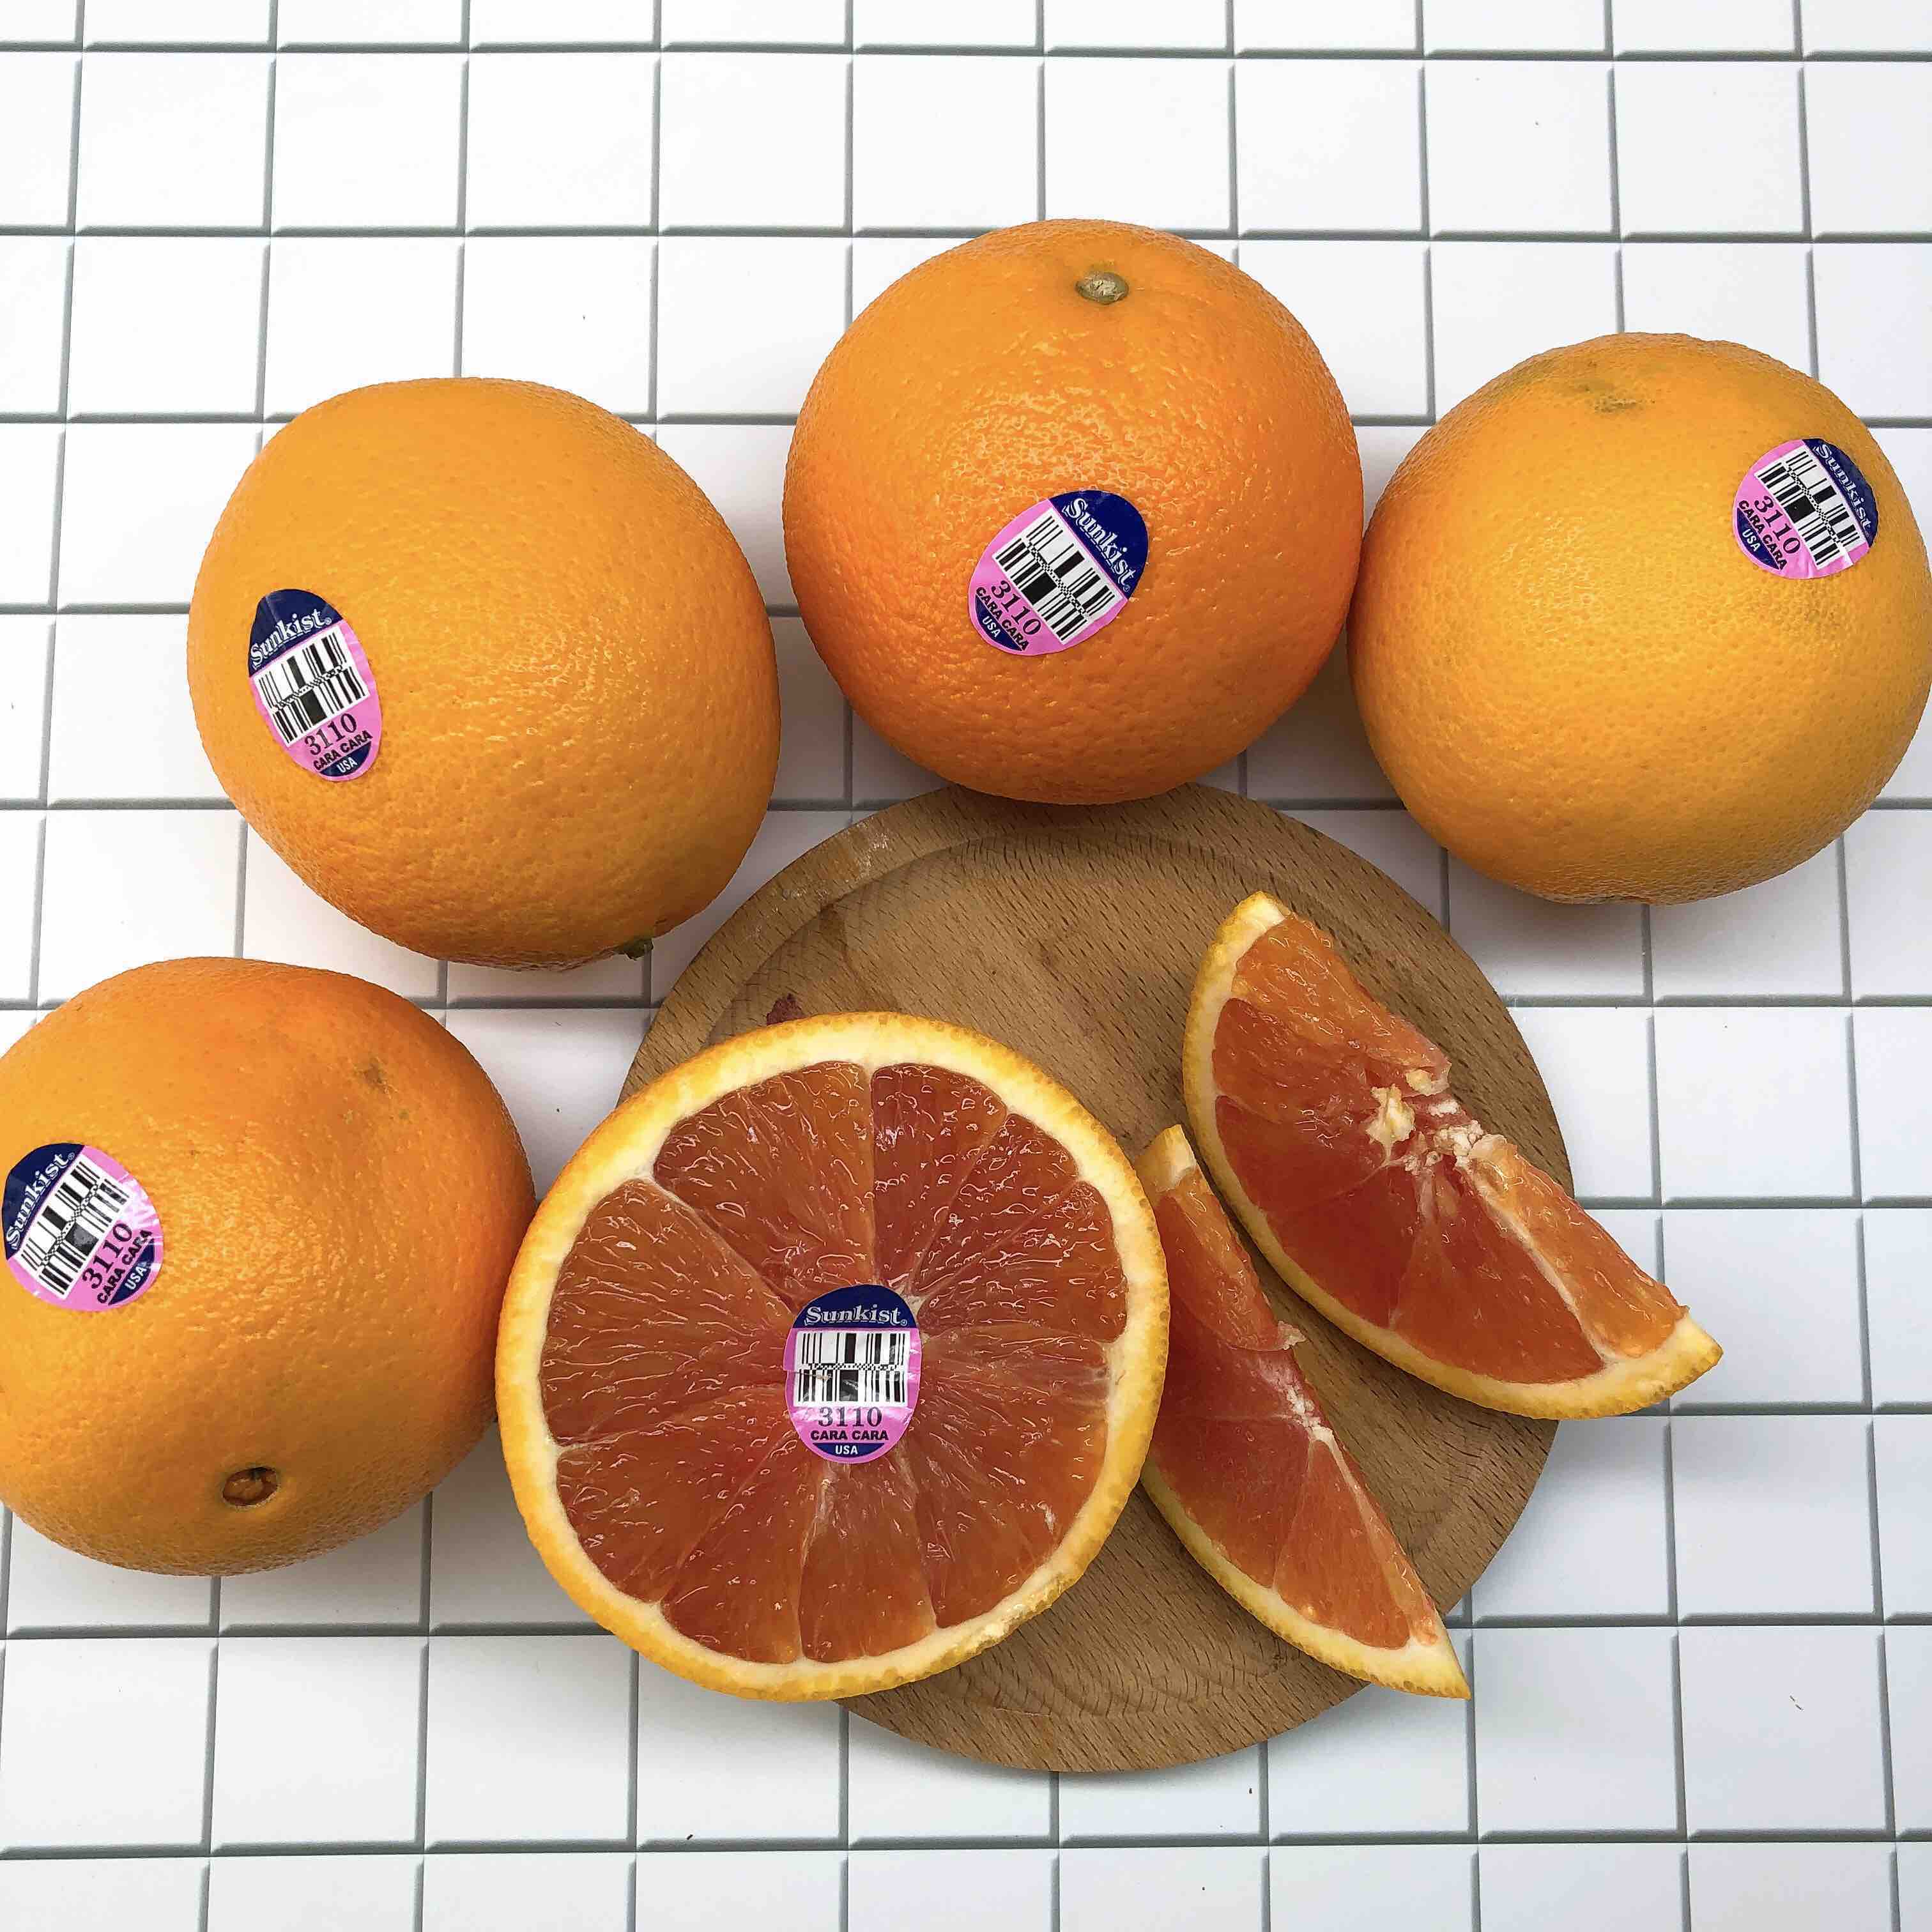 USA Sunkist血橙 ,血橙的营养价值是普通橙子的